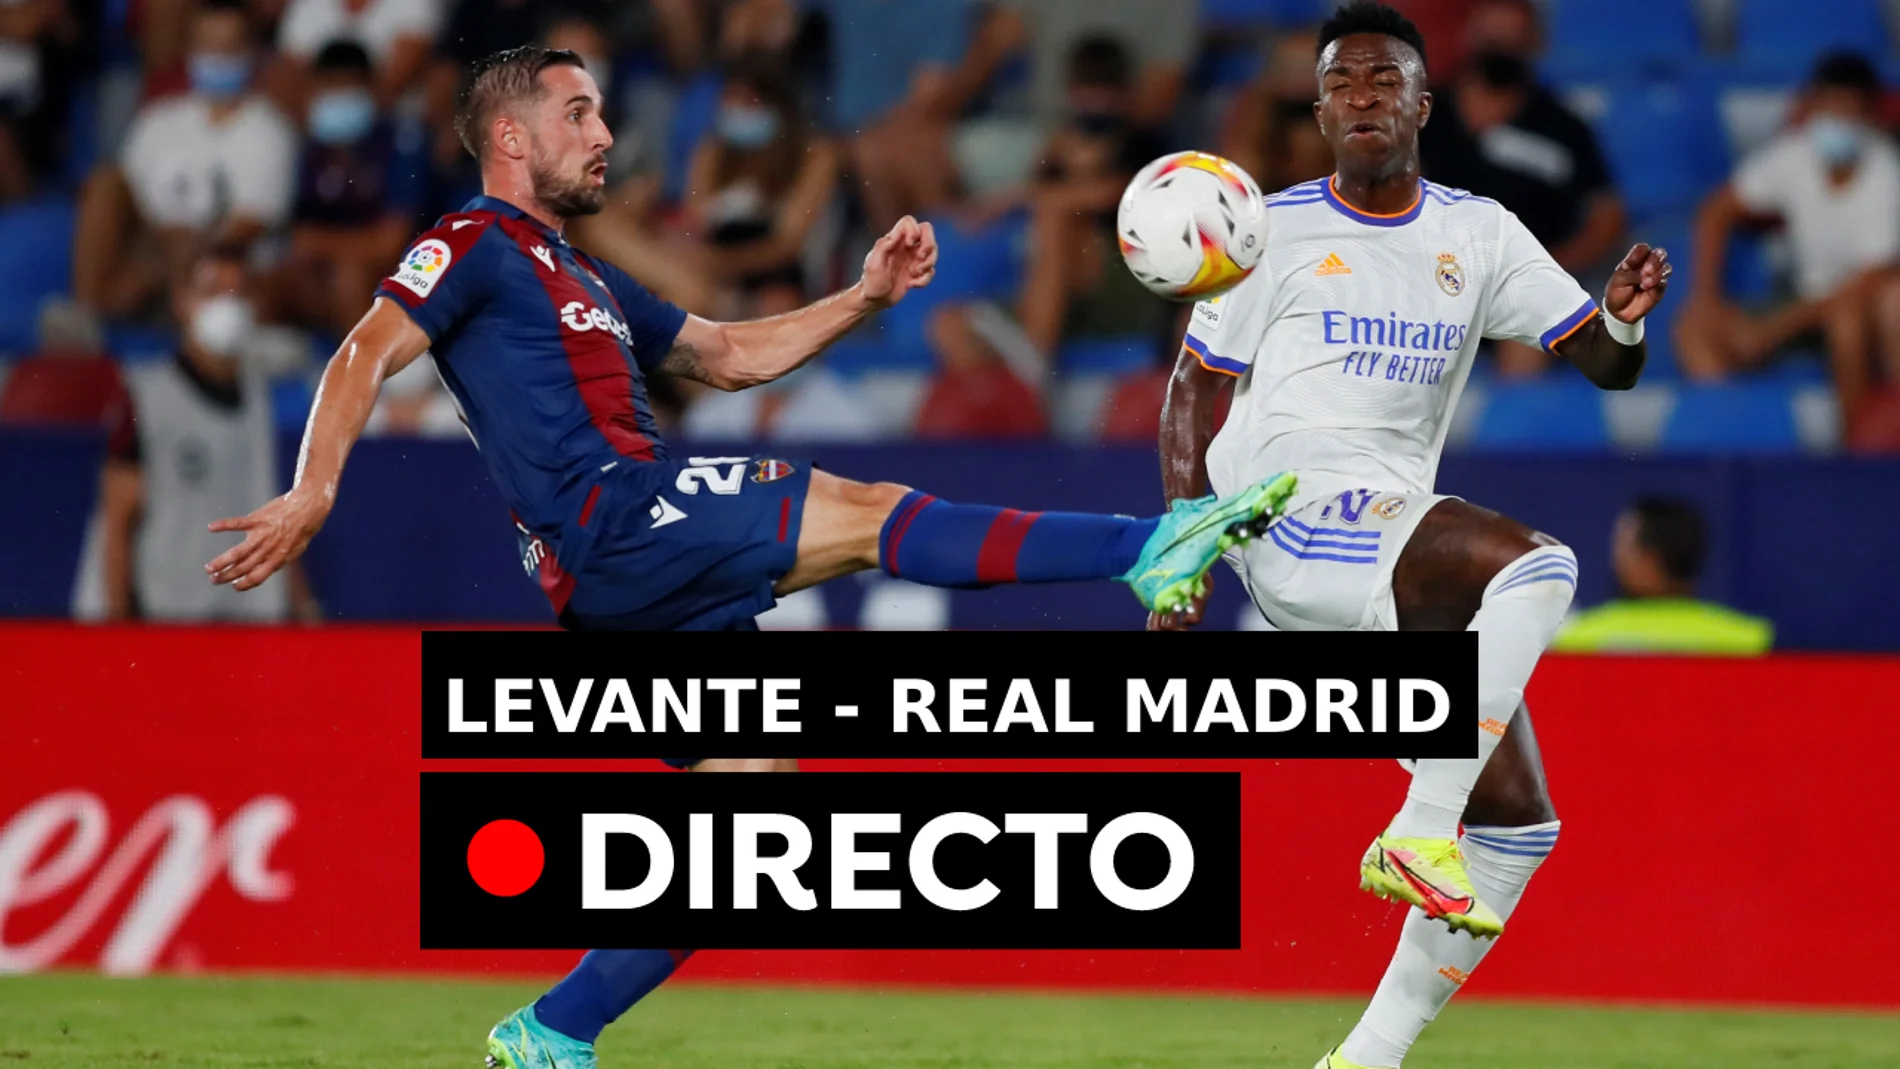 Levante - Real Madrid: Liga Santander hoy, en directo (3-3)